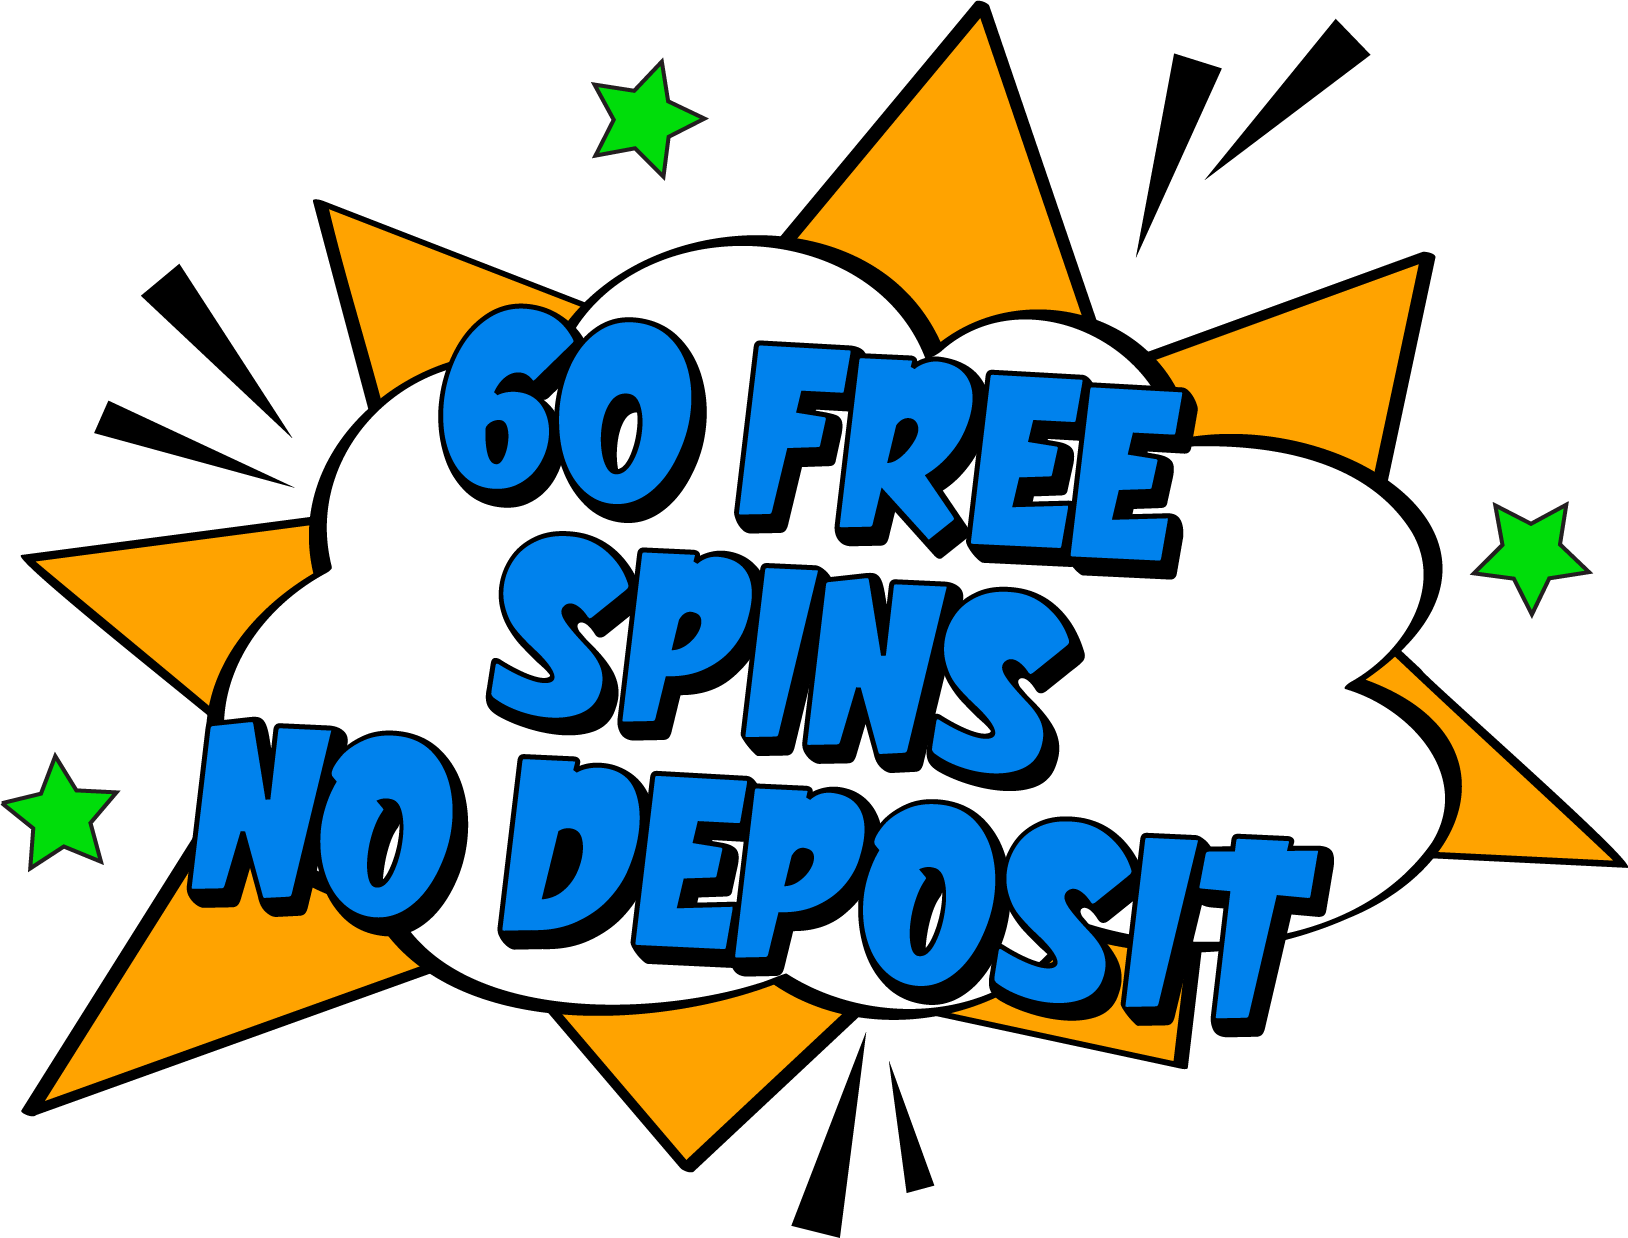 60 Free Spins No Deposit